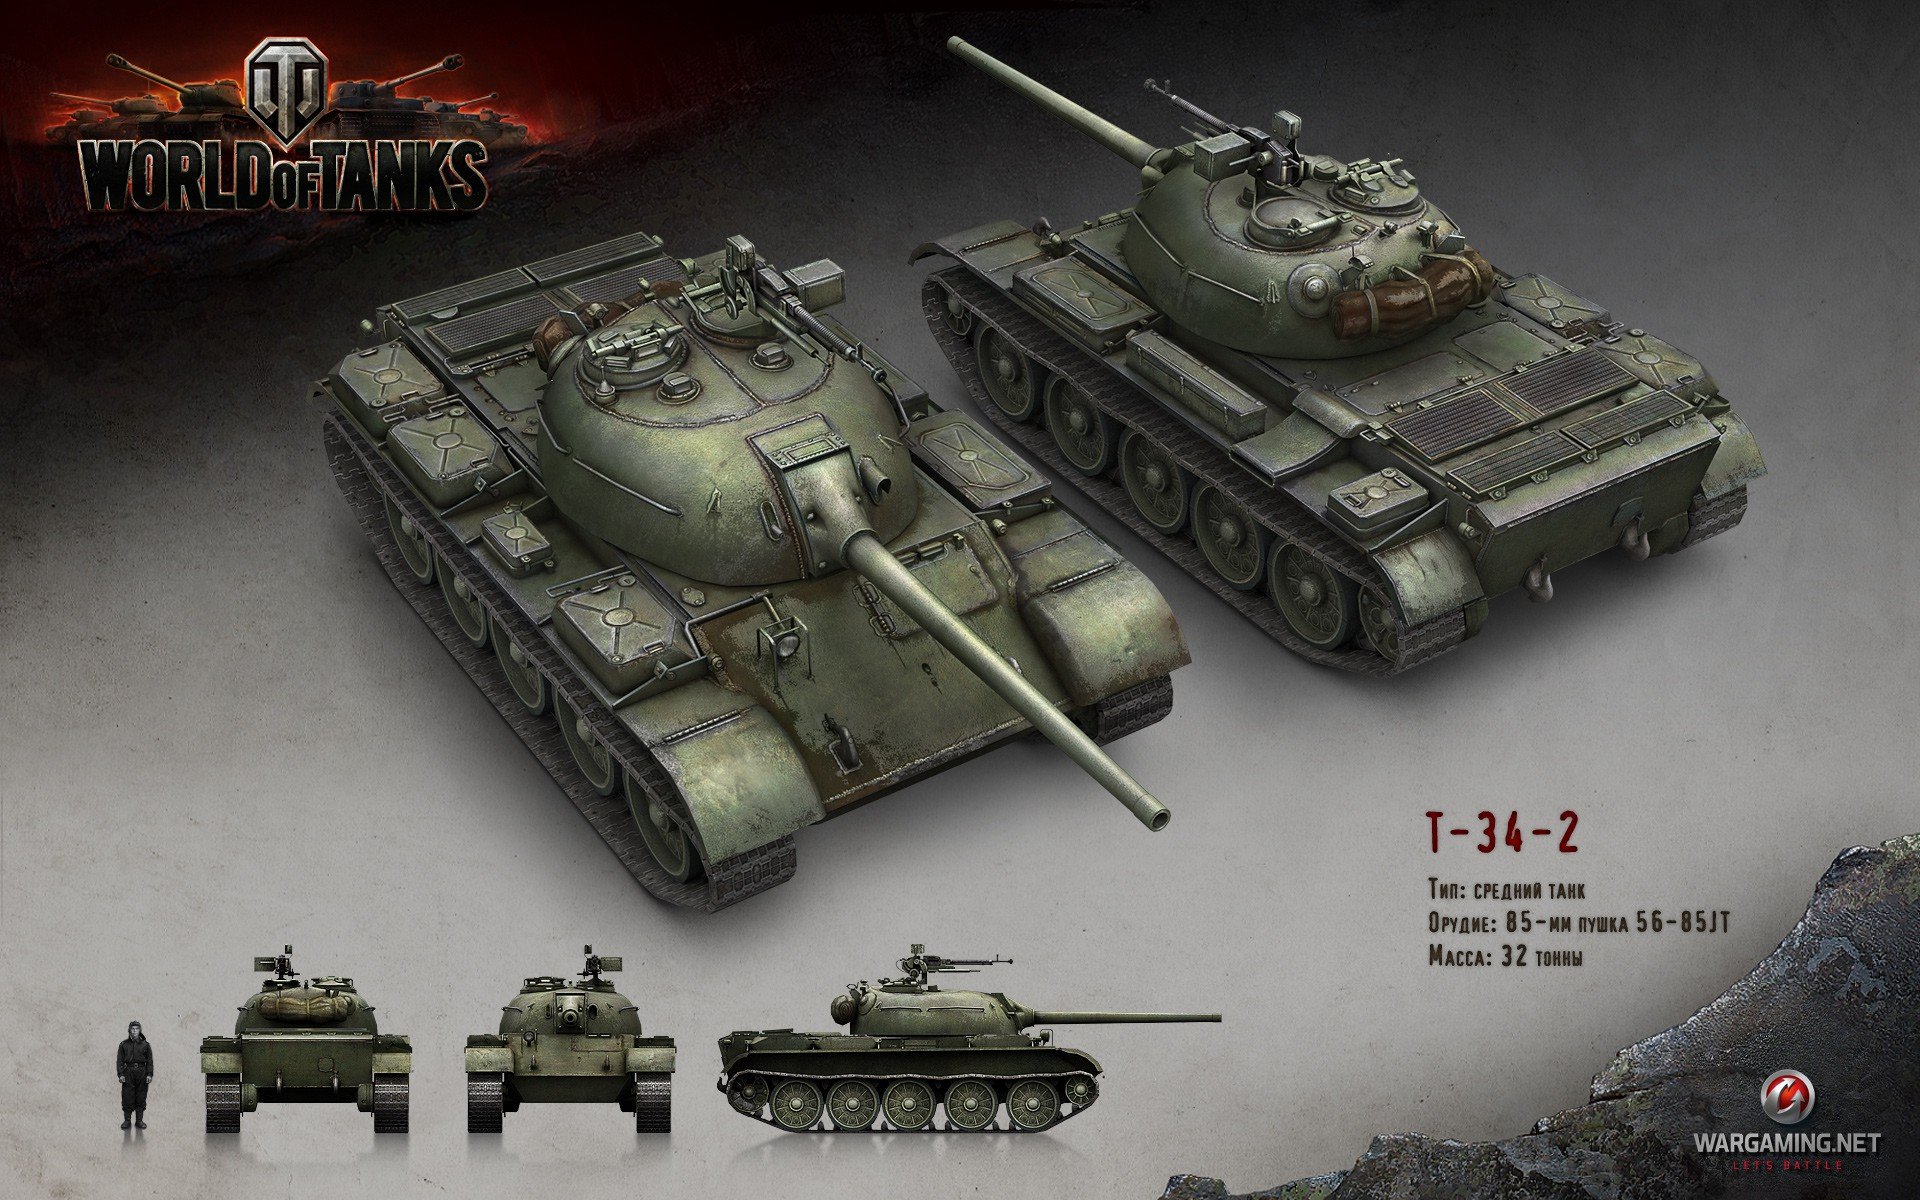 World of Tanks, Tank, Wargaming, T 34 2 Wallpaper